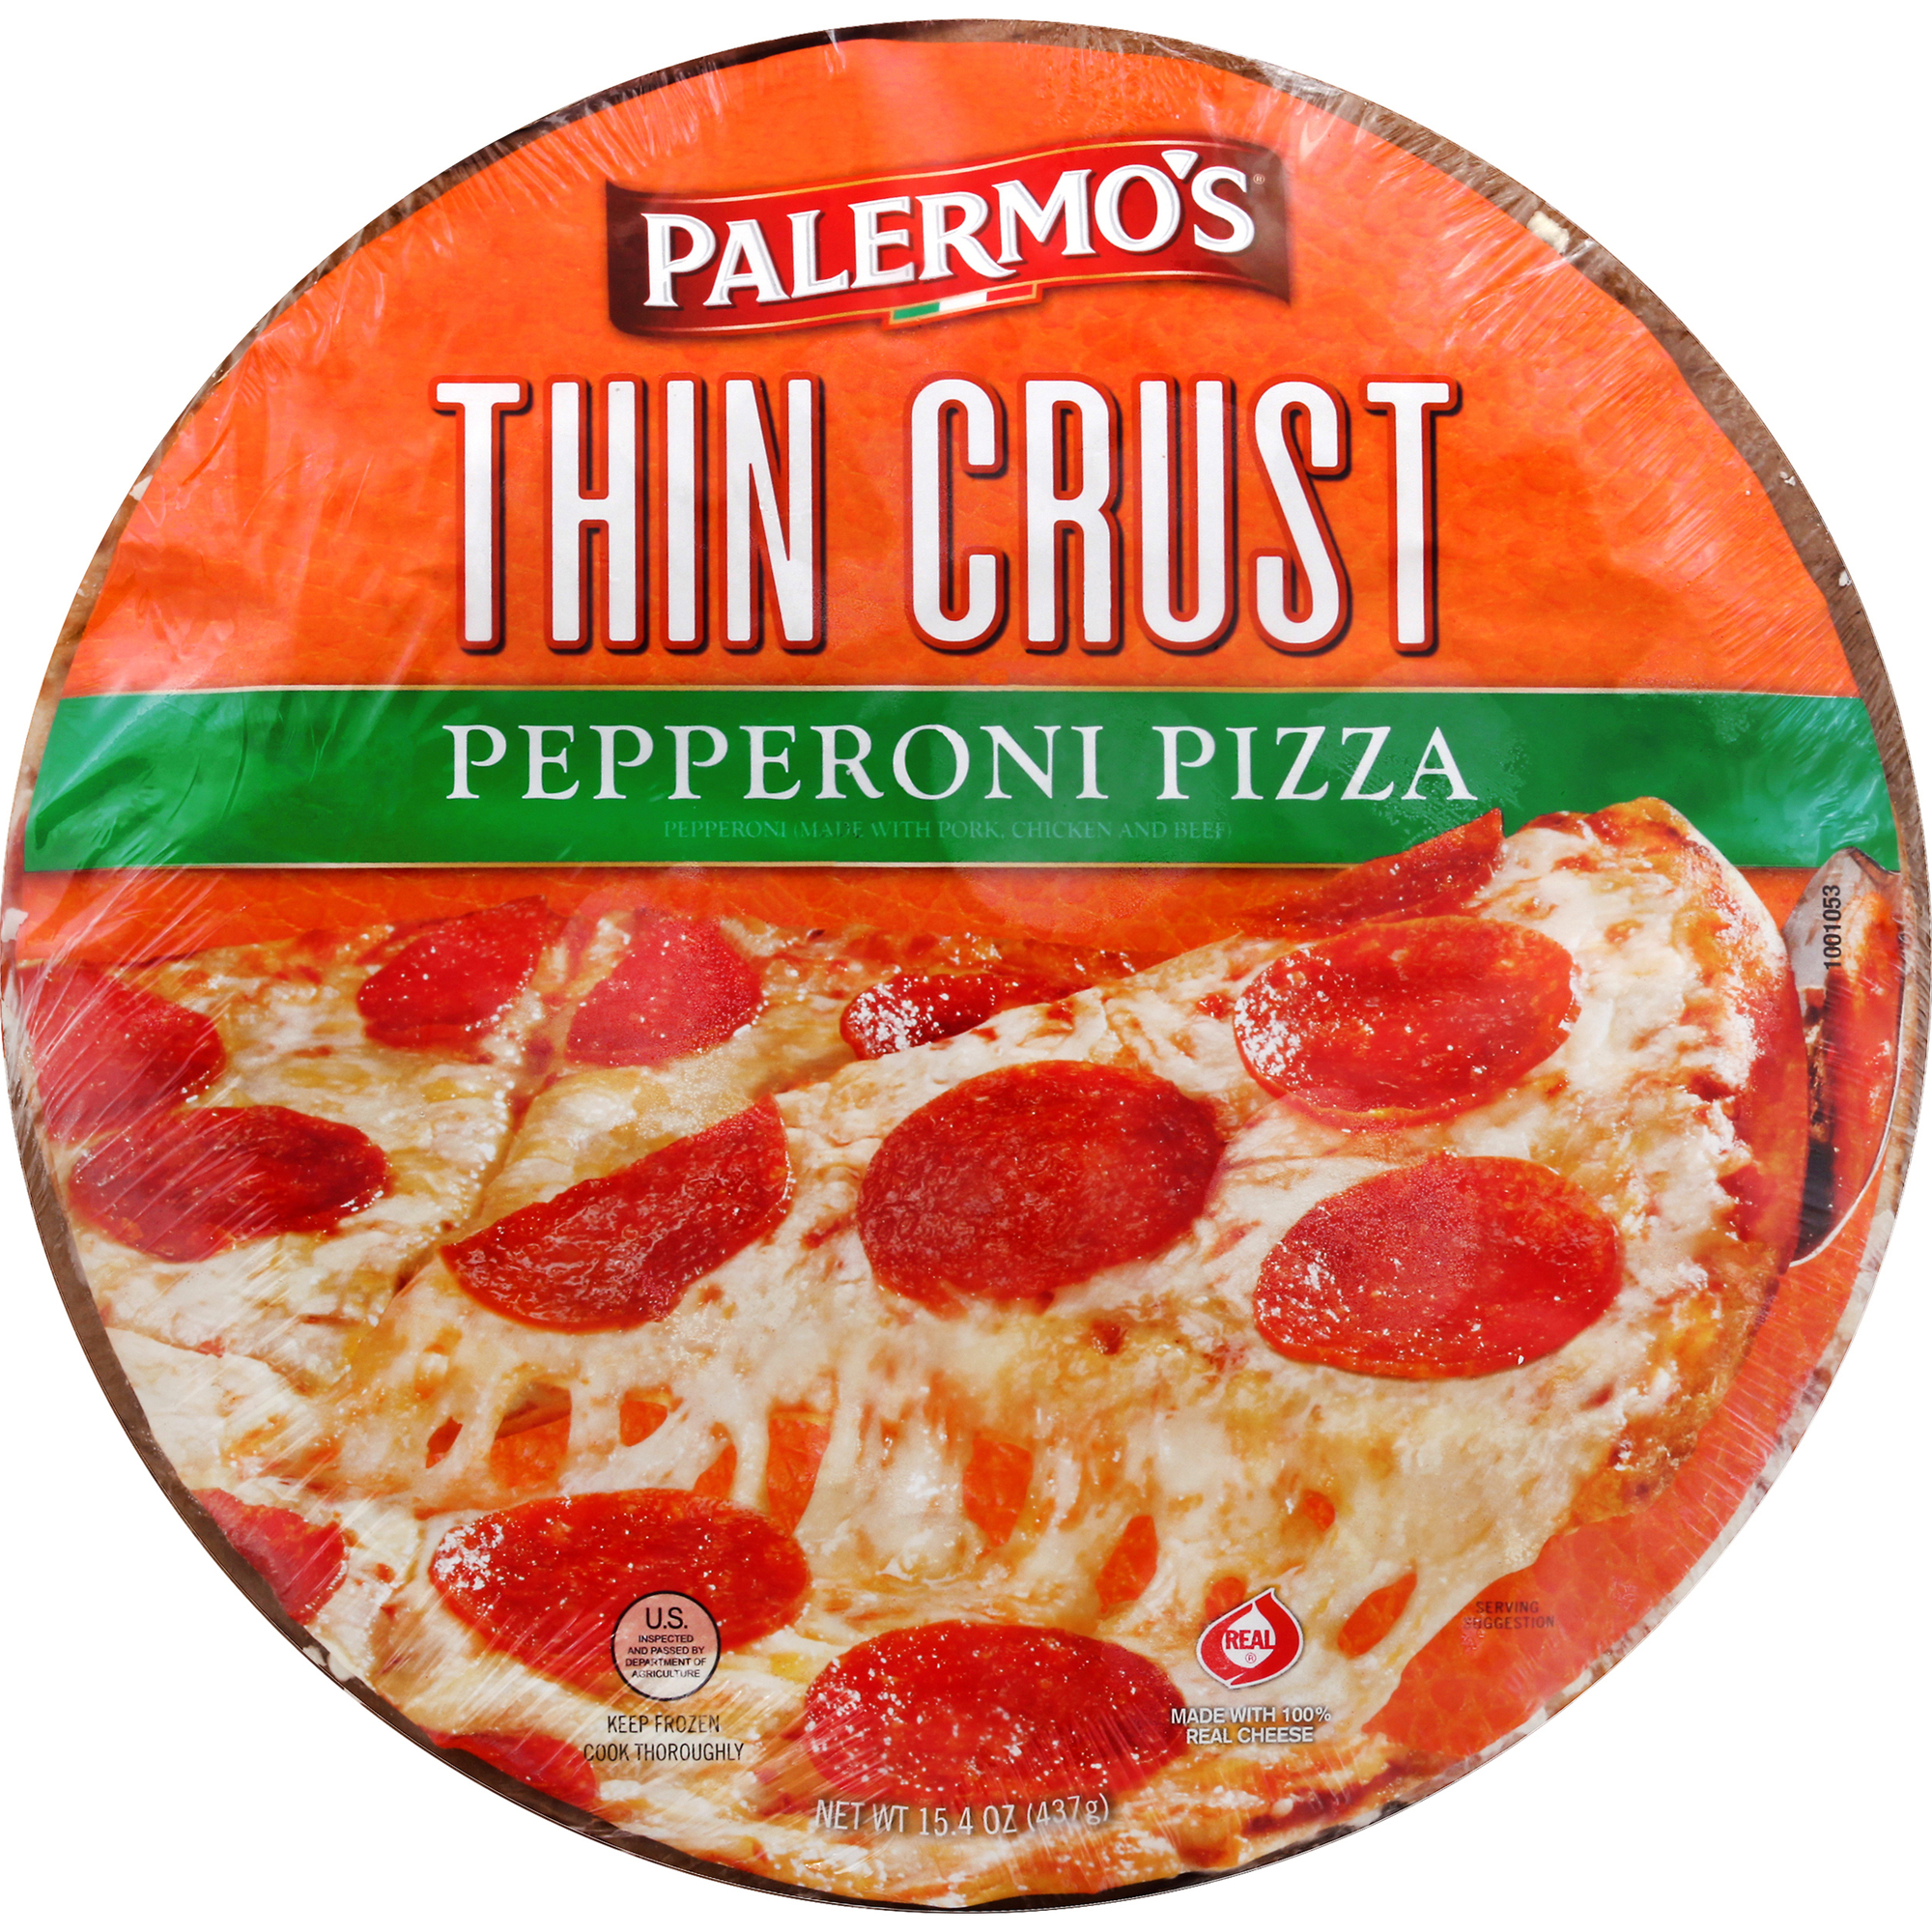 Palermo's Thin Crust Pepperoni Pizza 12 units per case 15.4 oz